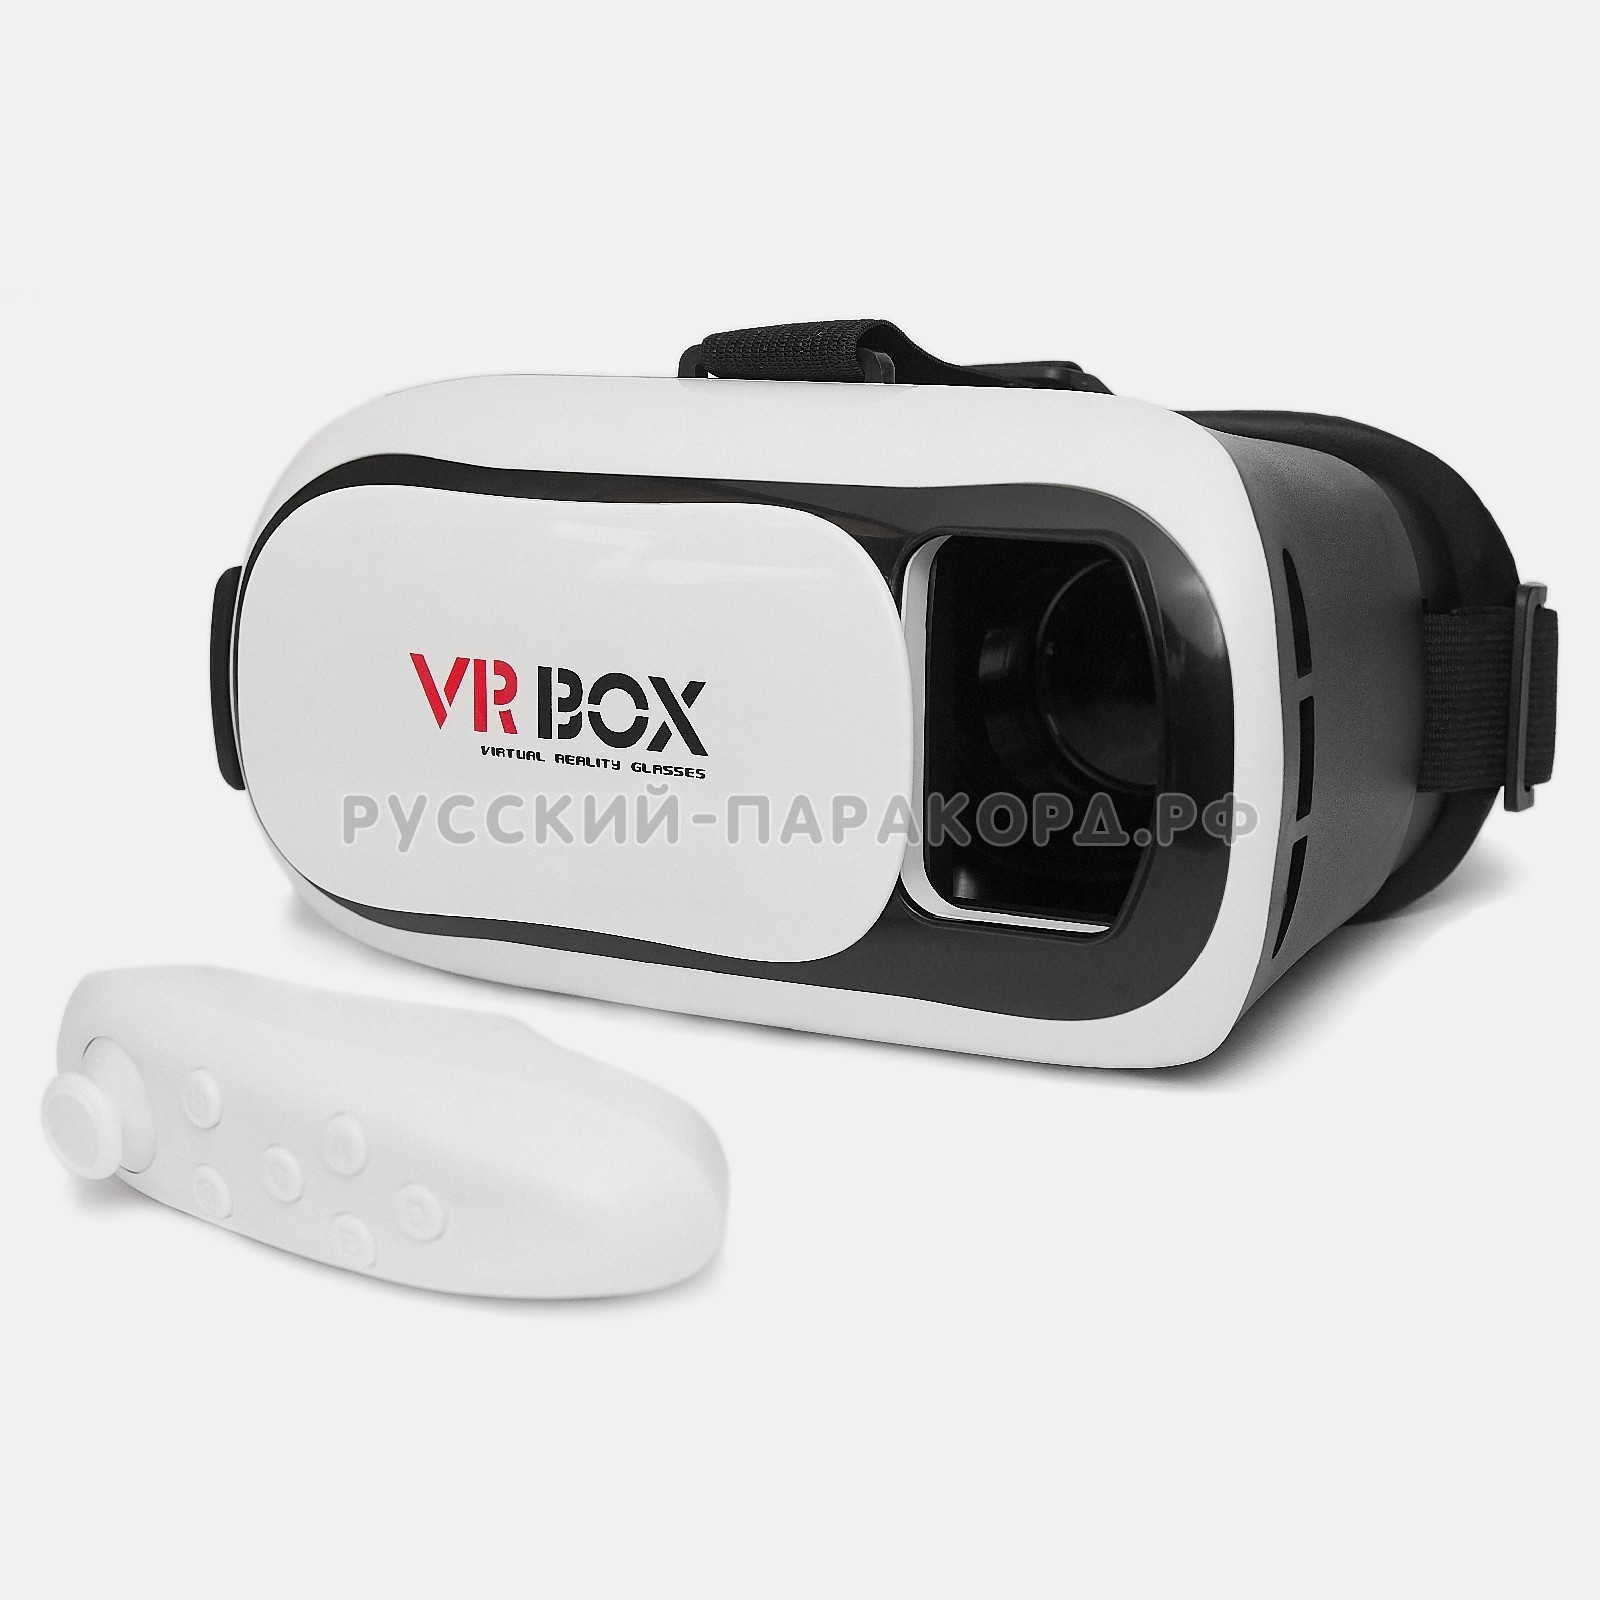 Купить очки днс. Очки VR Box 2. Очки виртуальной реальности VR Box 3d (Black/White). VR Box VR 2.0 С пультом. Очки вертулярной реальности VR Box.